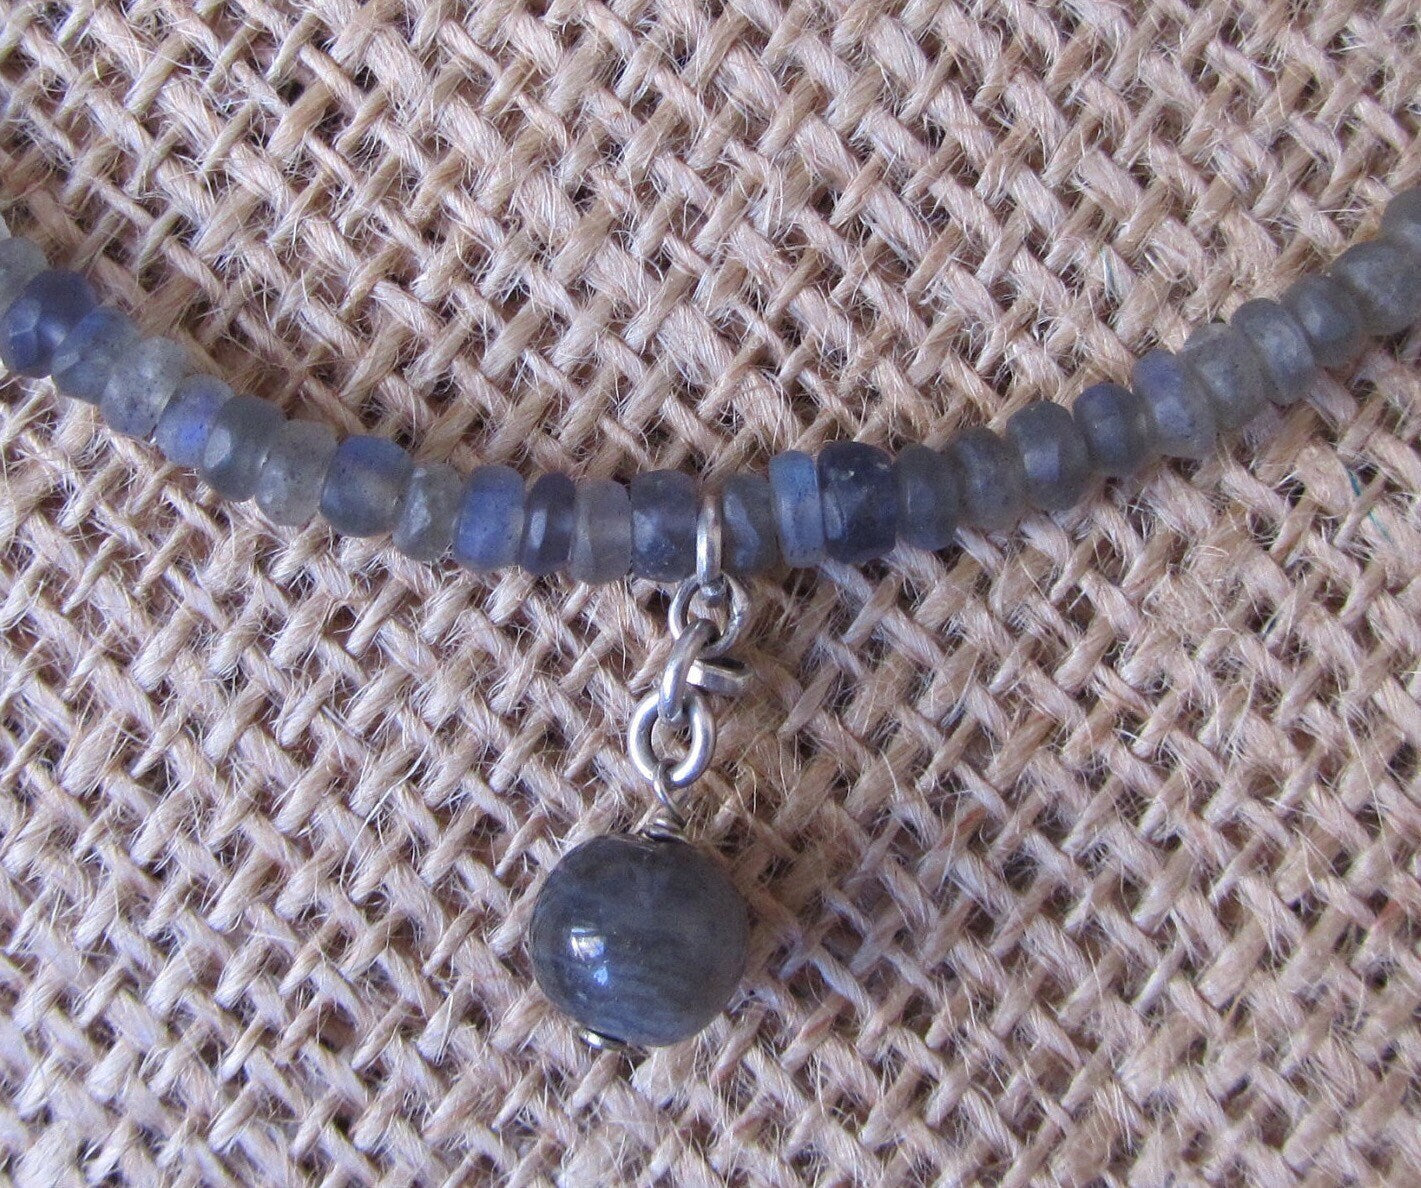 Labradorite, Lapis Lazuli & Aquamarine Necklace